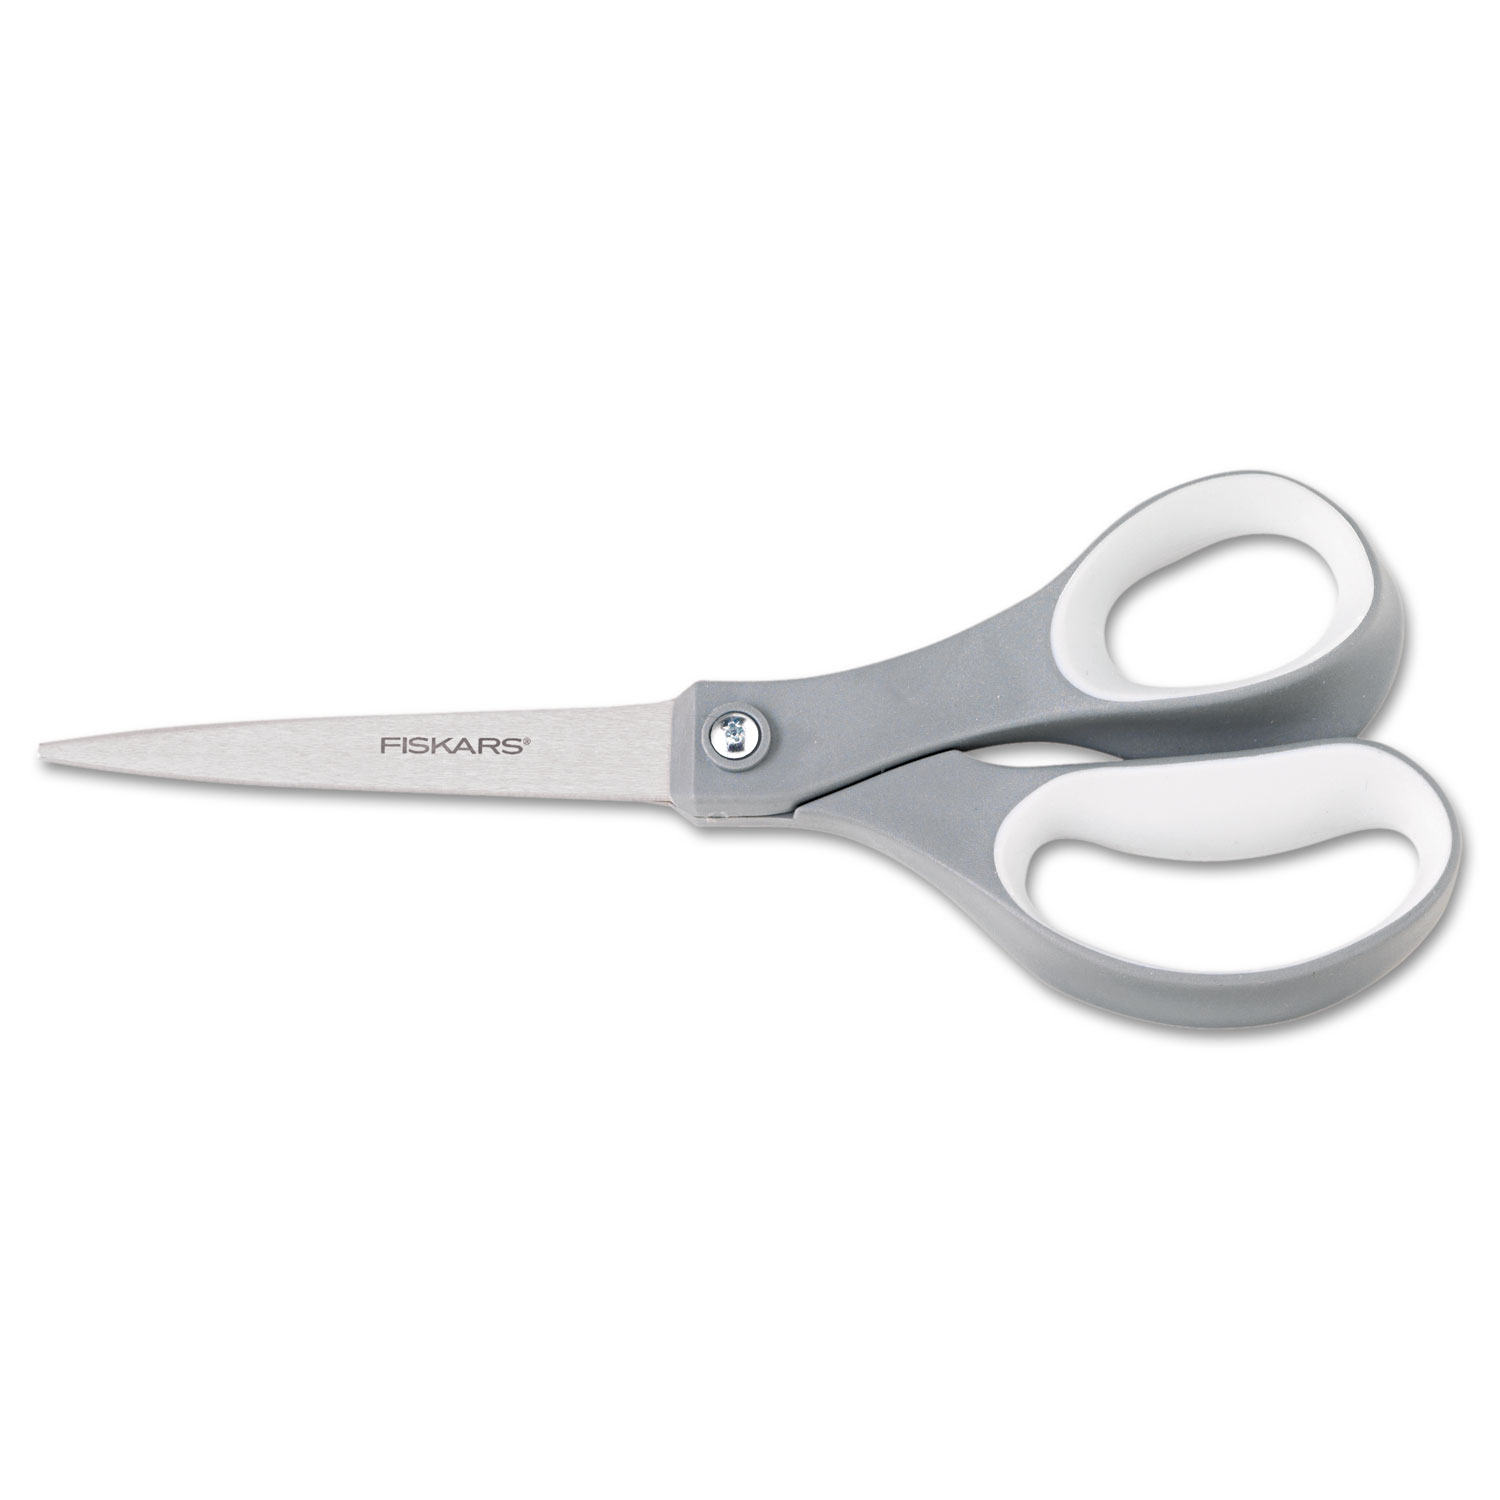 Fiskars Softgrip 8 Contoured Scissors, Titanium - 2 count